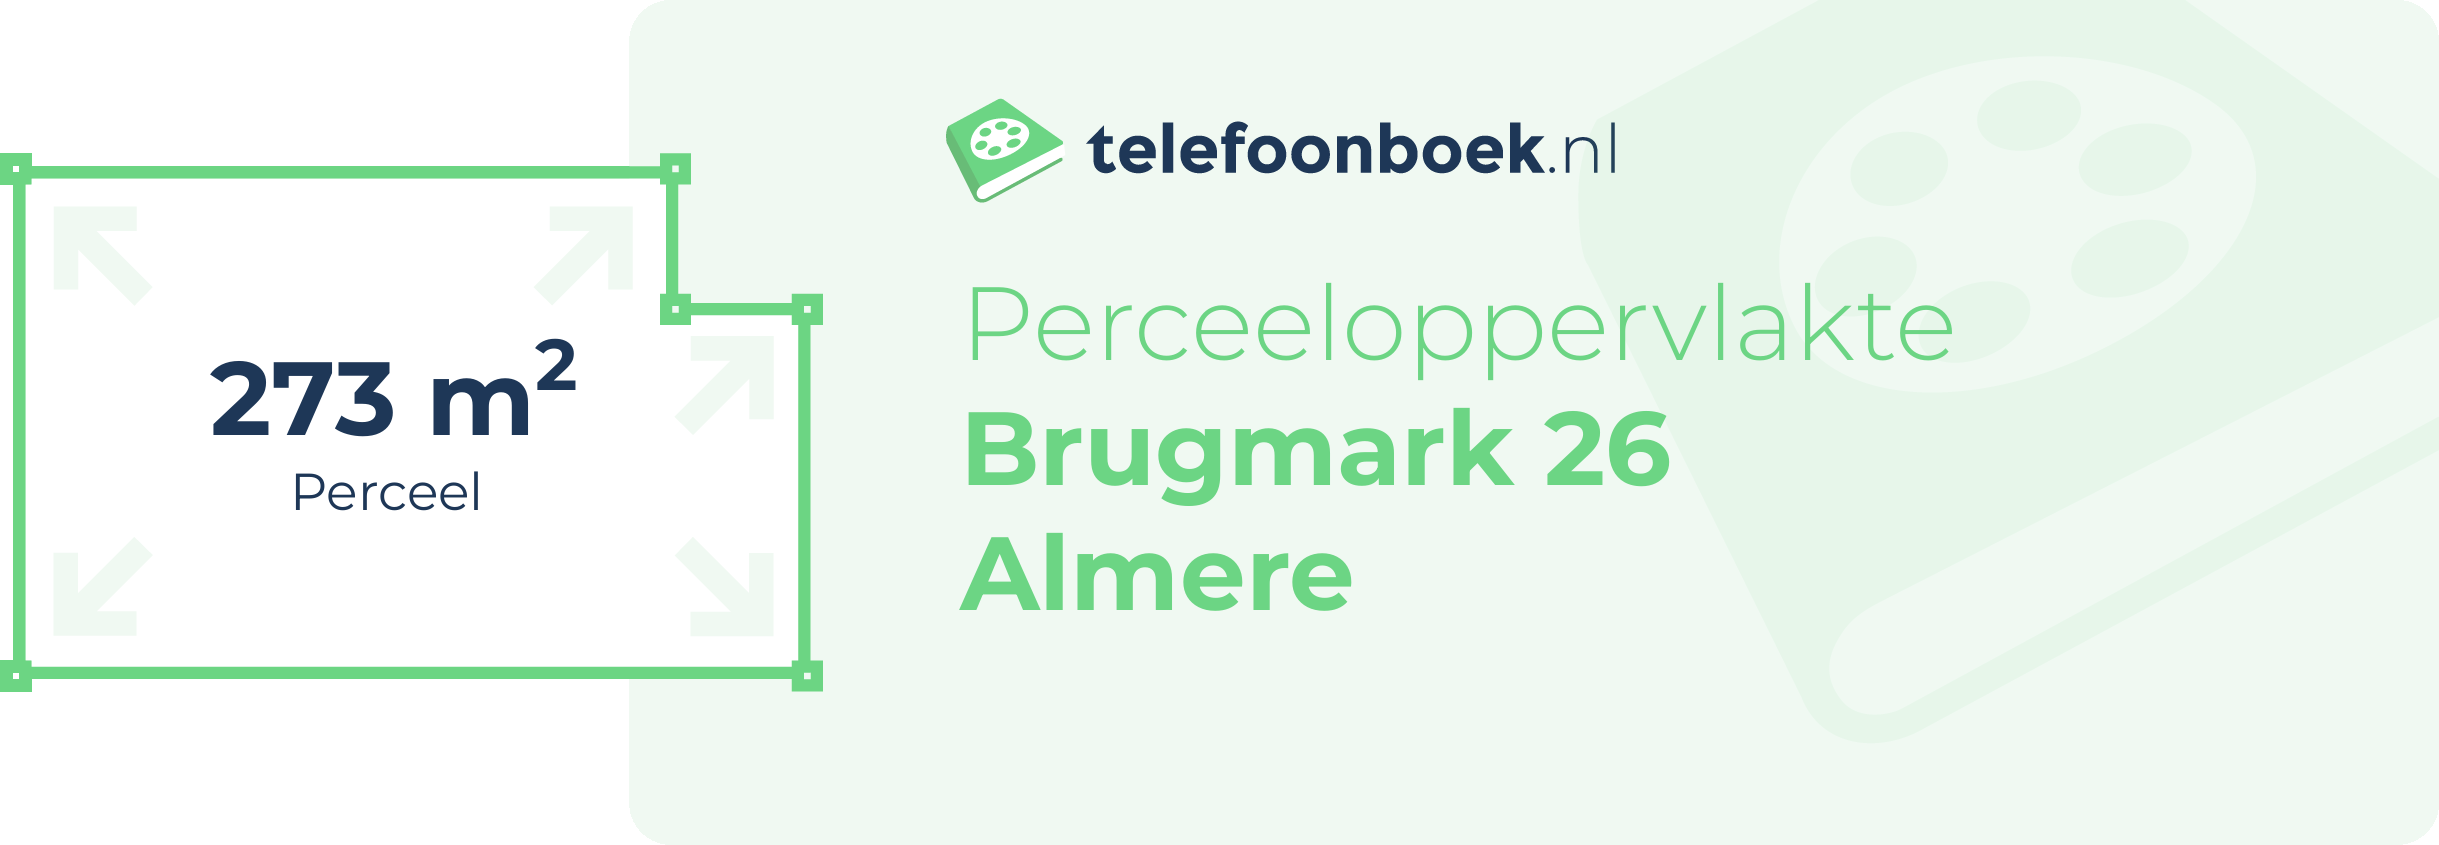 Perceeloppervlakte Brugmark 26 Almere